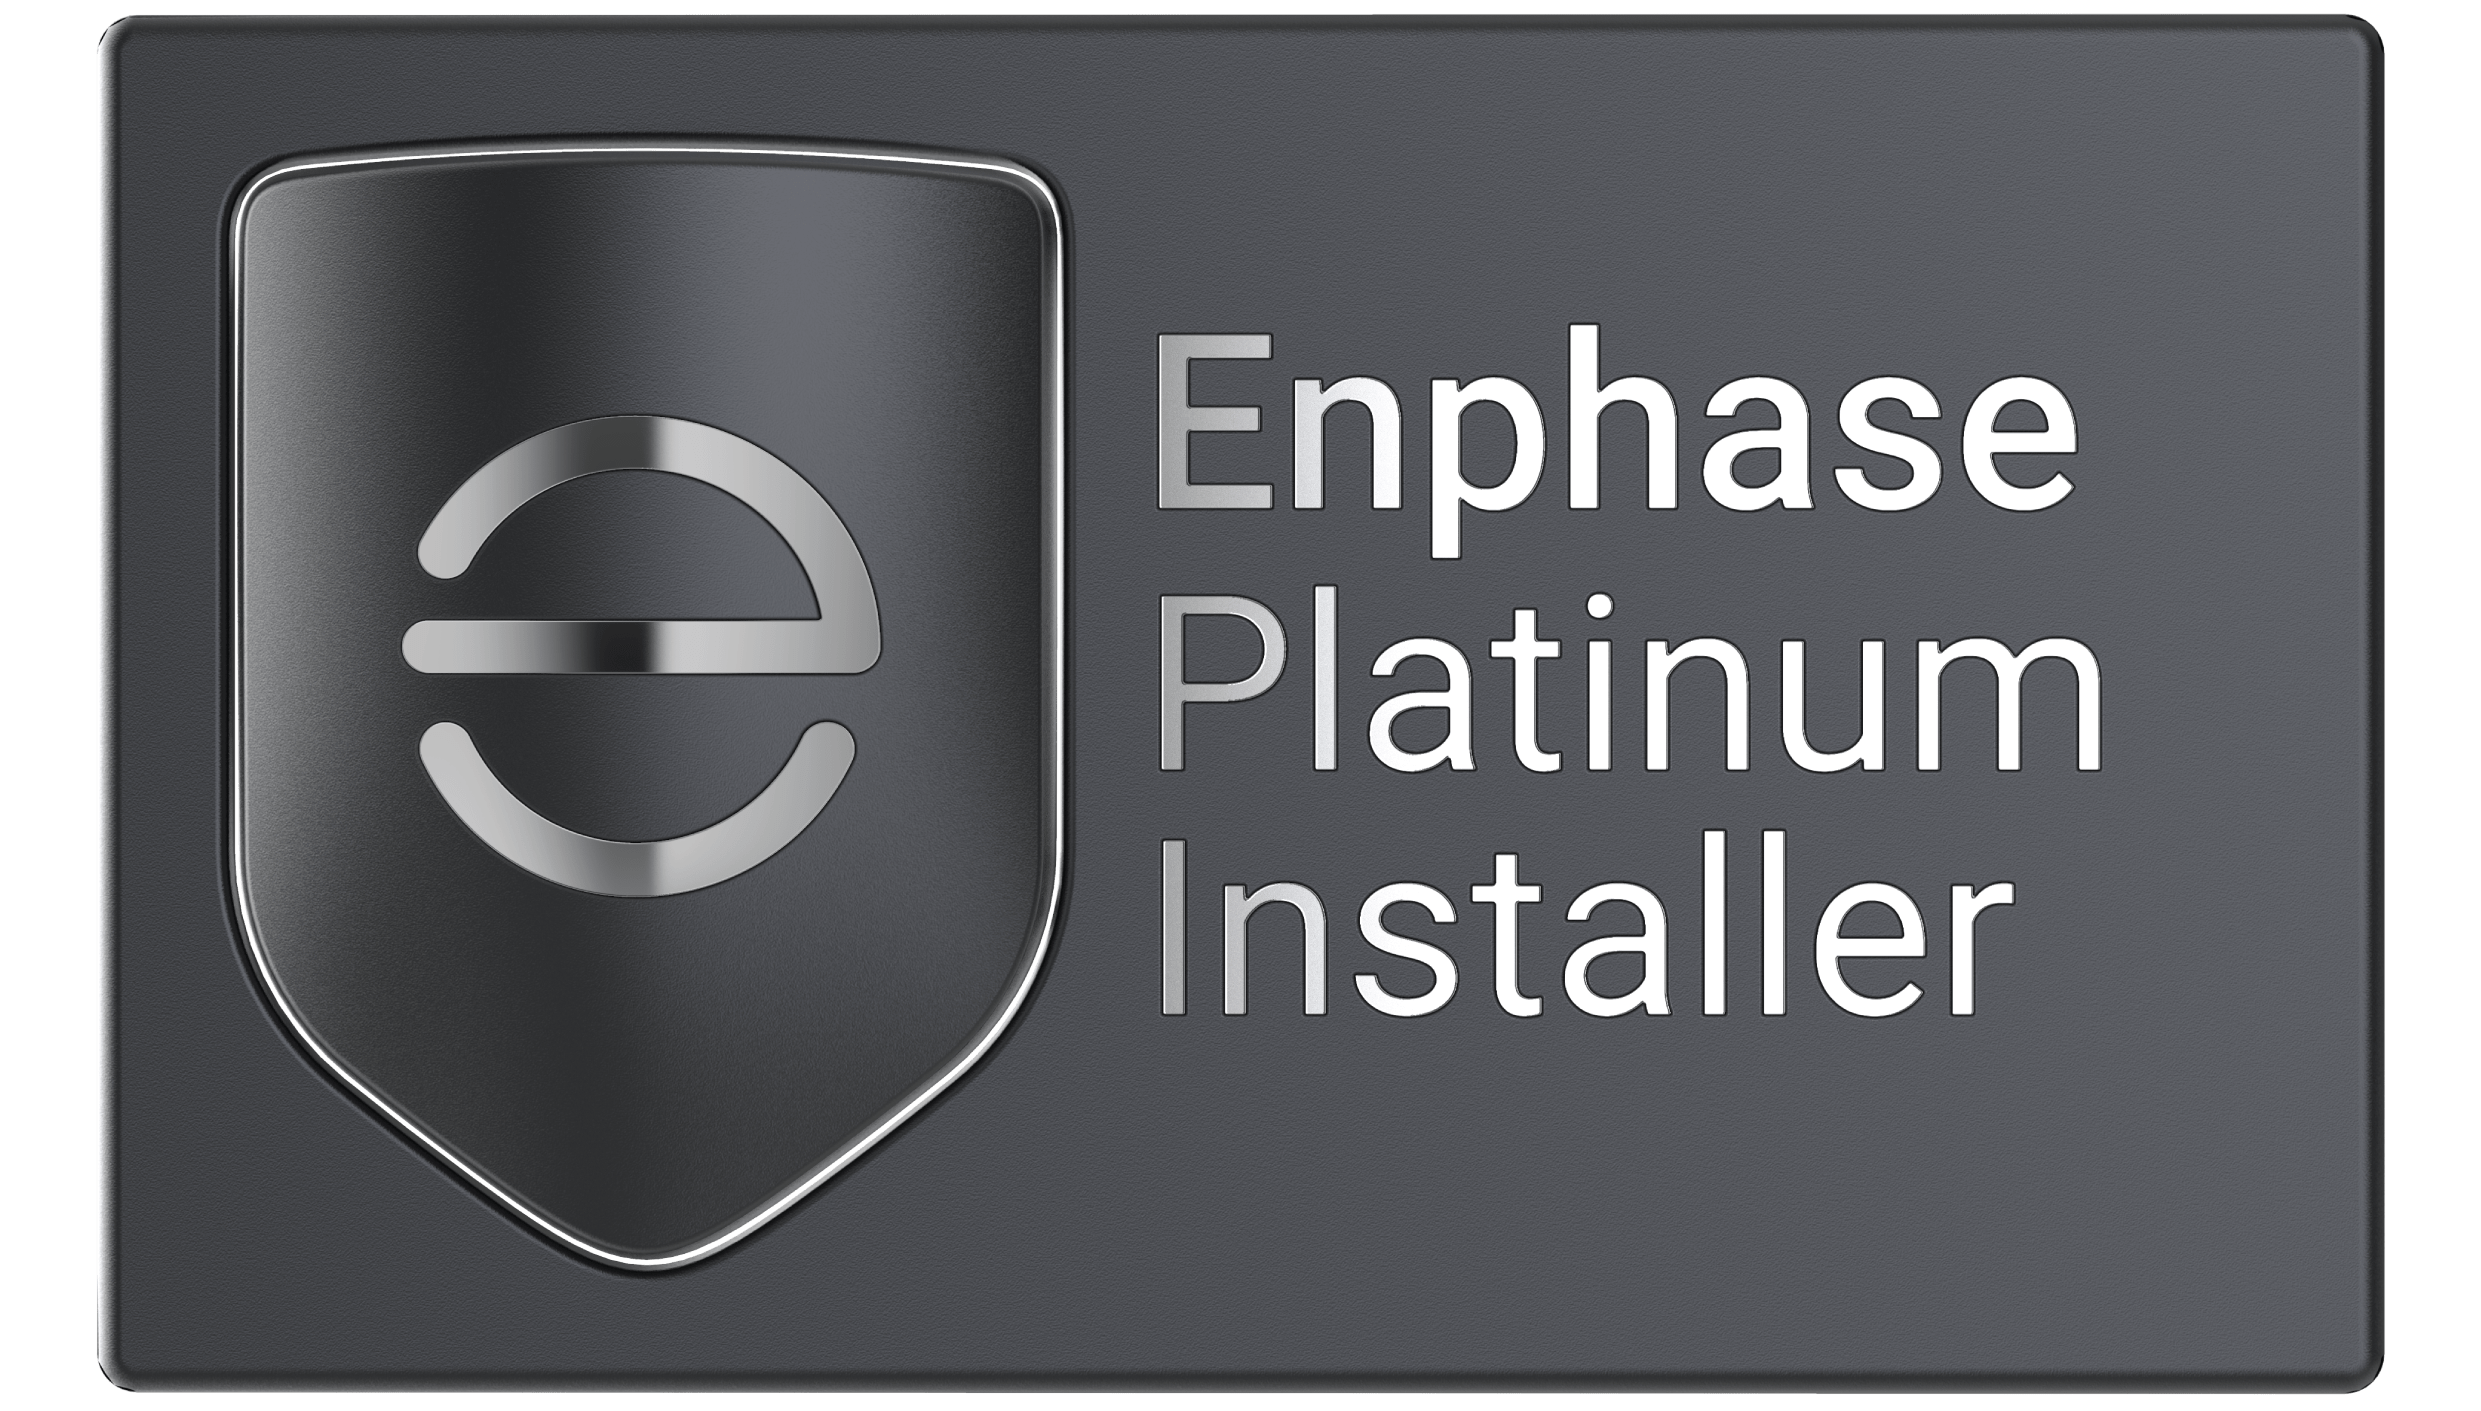 Enphase Platinum Logo